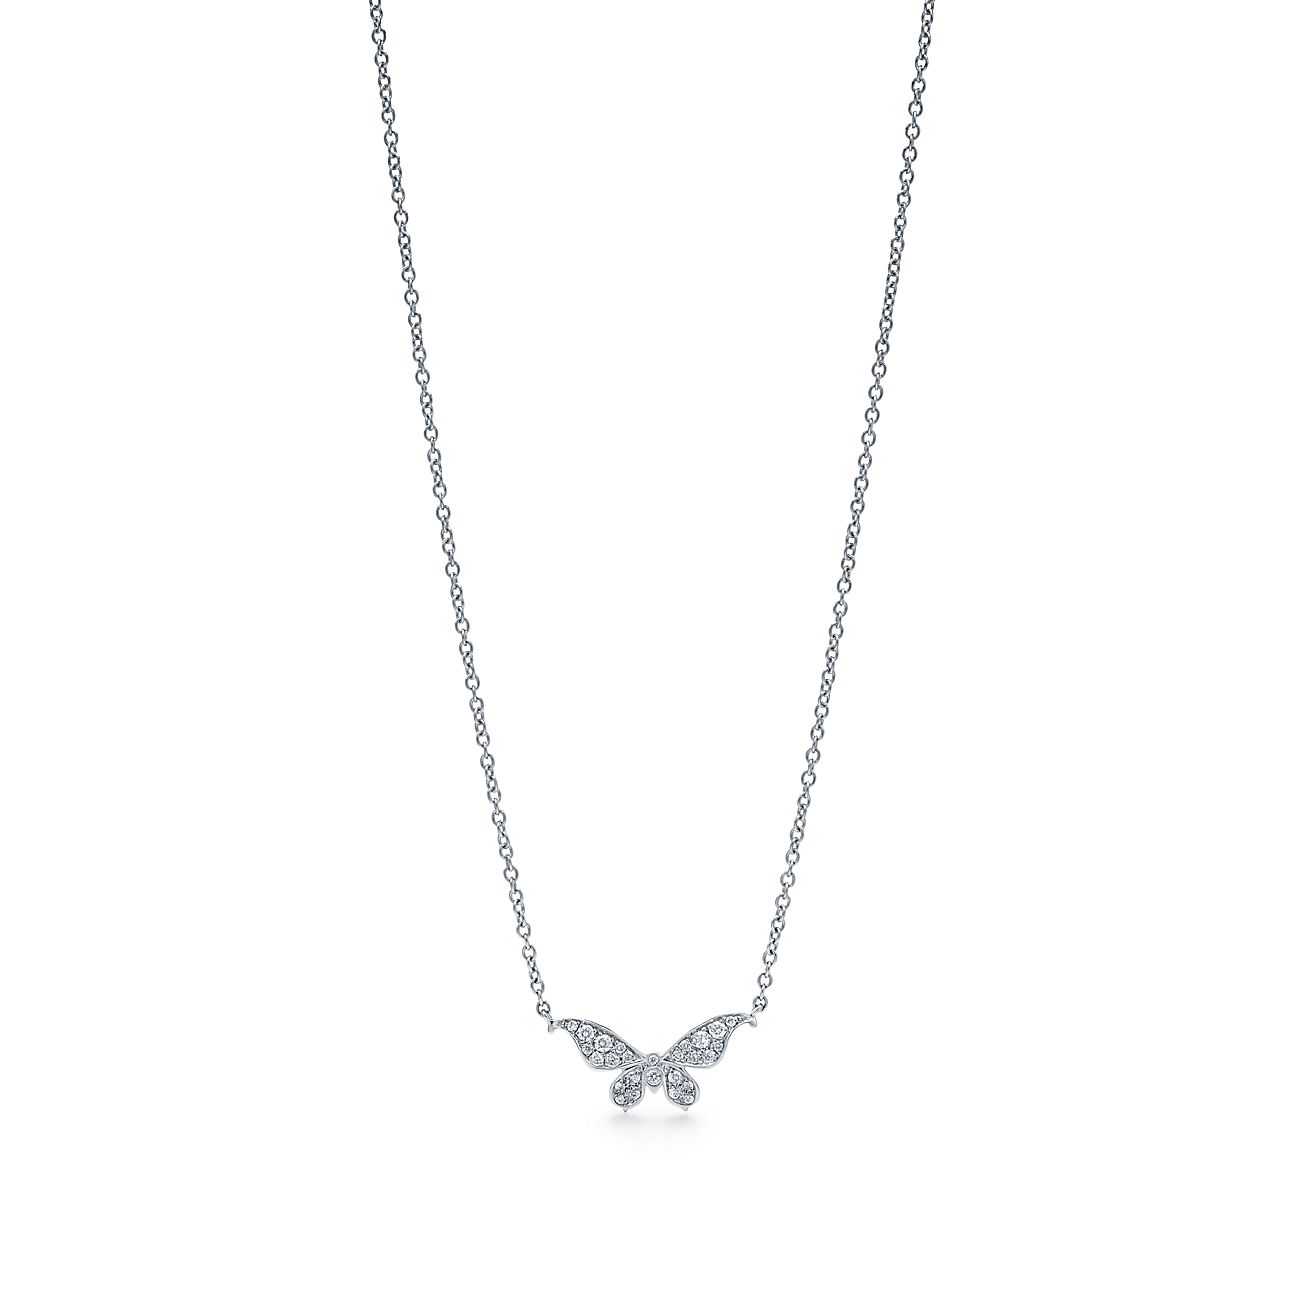 Tiffany Enchant™ butterfly pendant in 